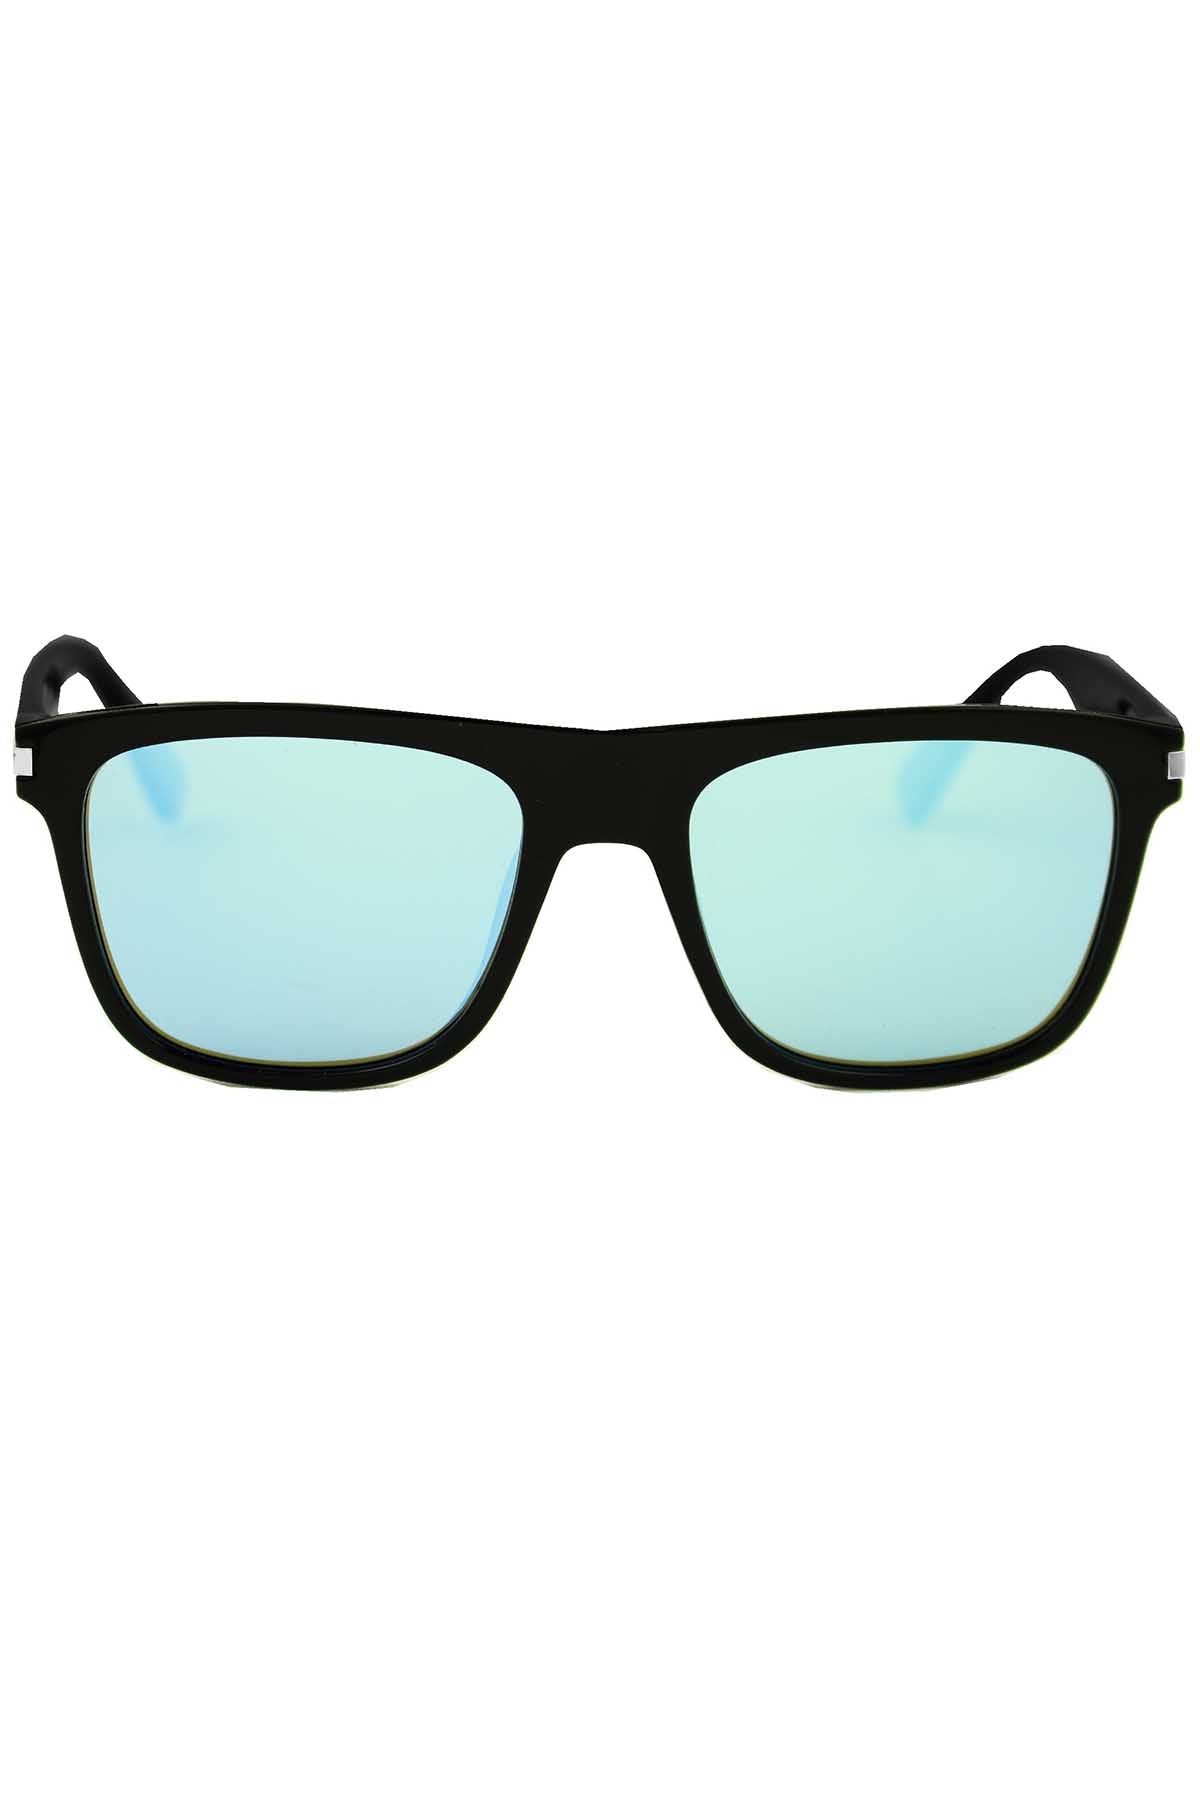 DIBI Black Rio Sunglasses